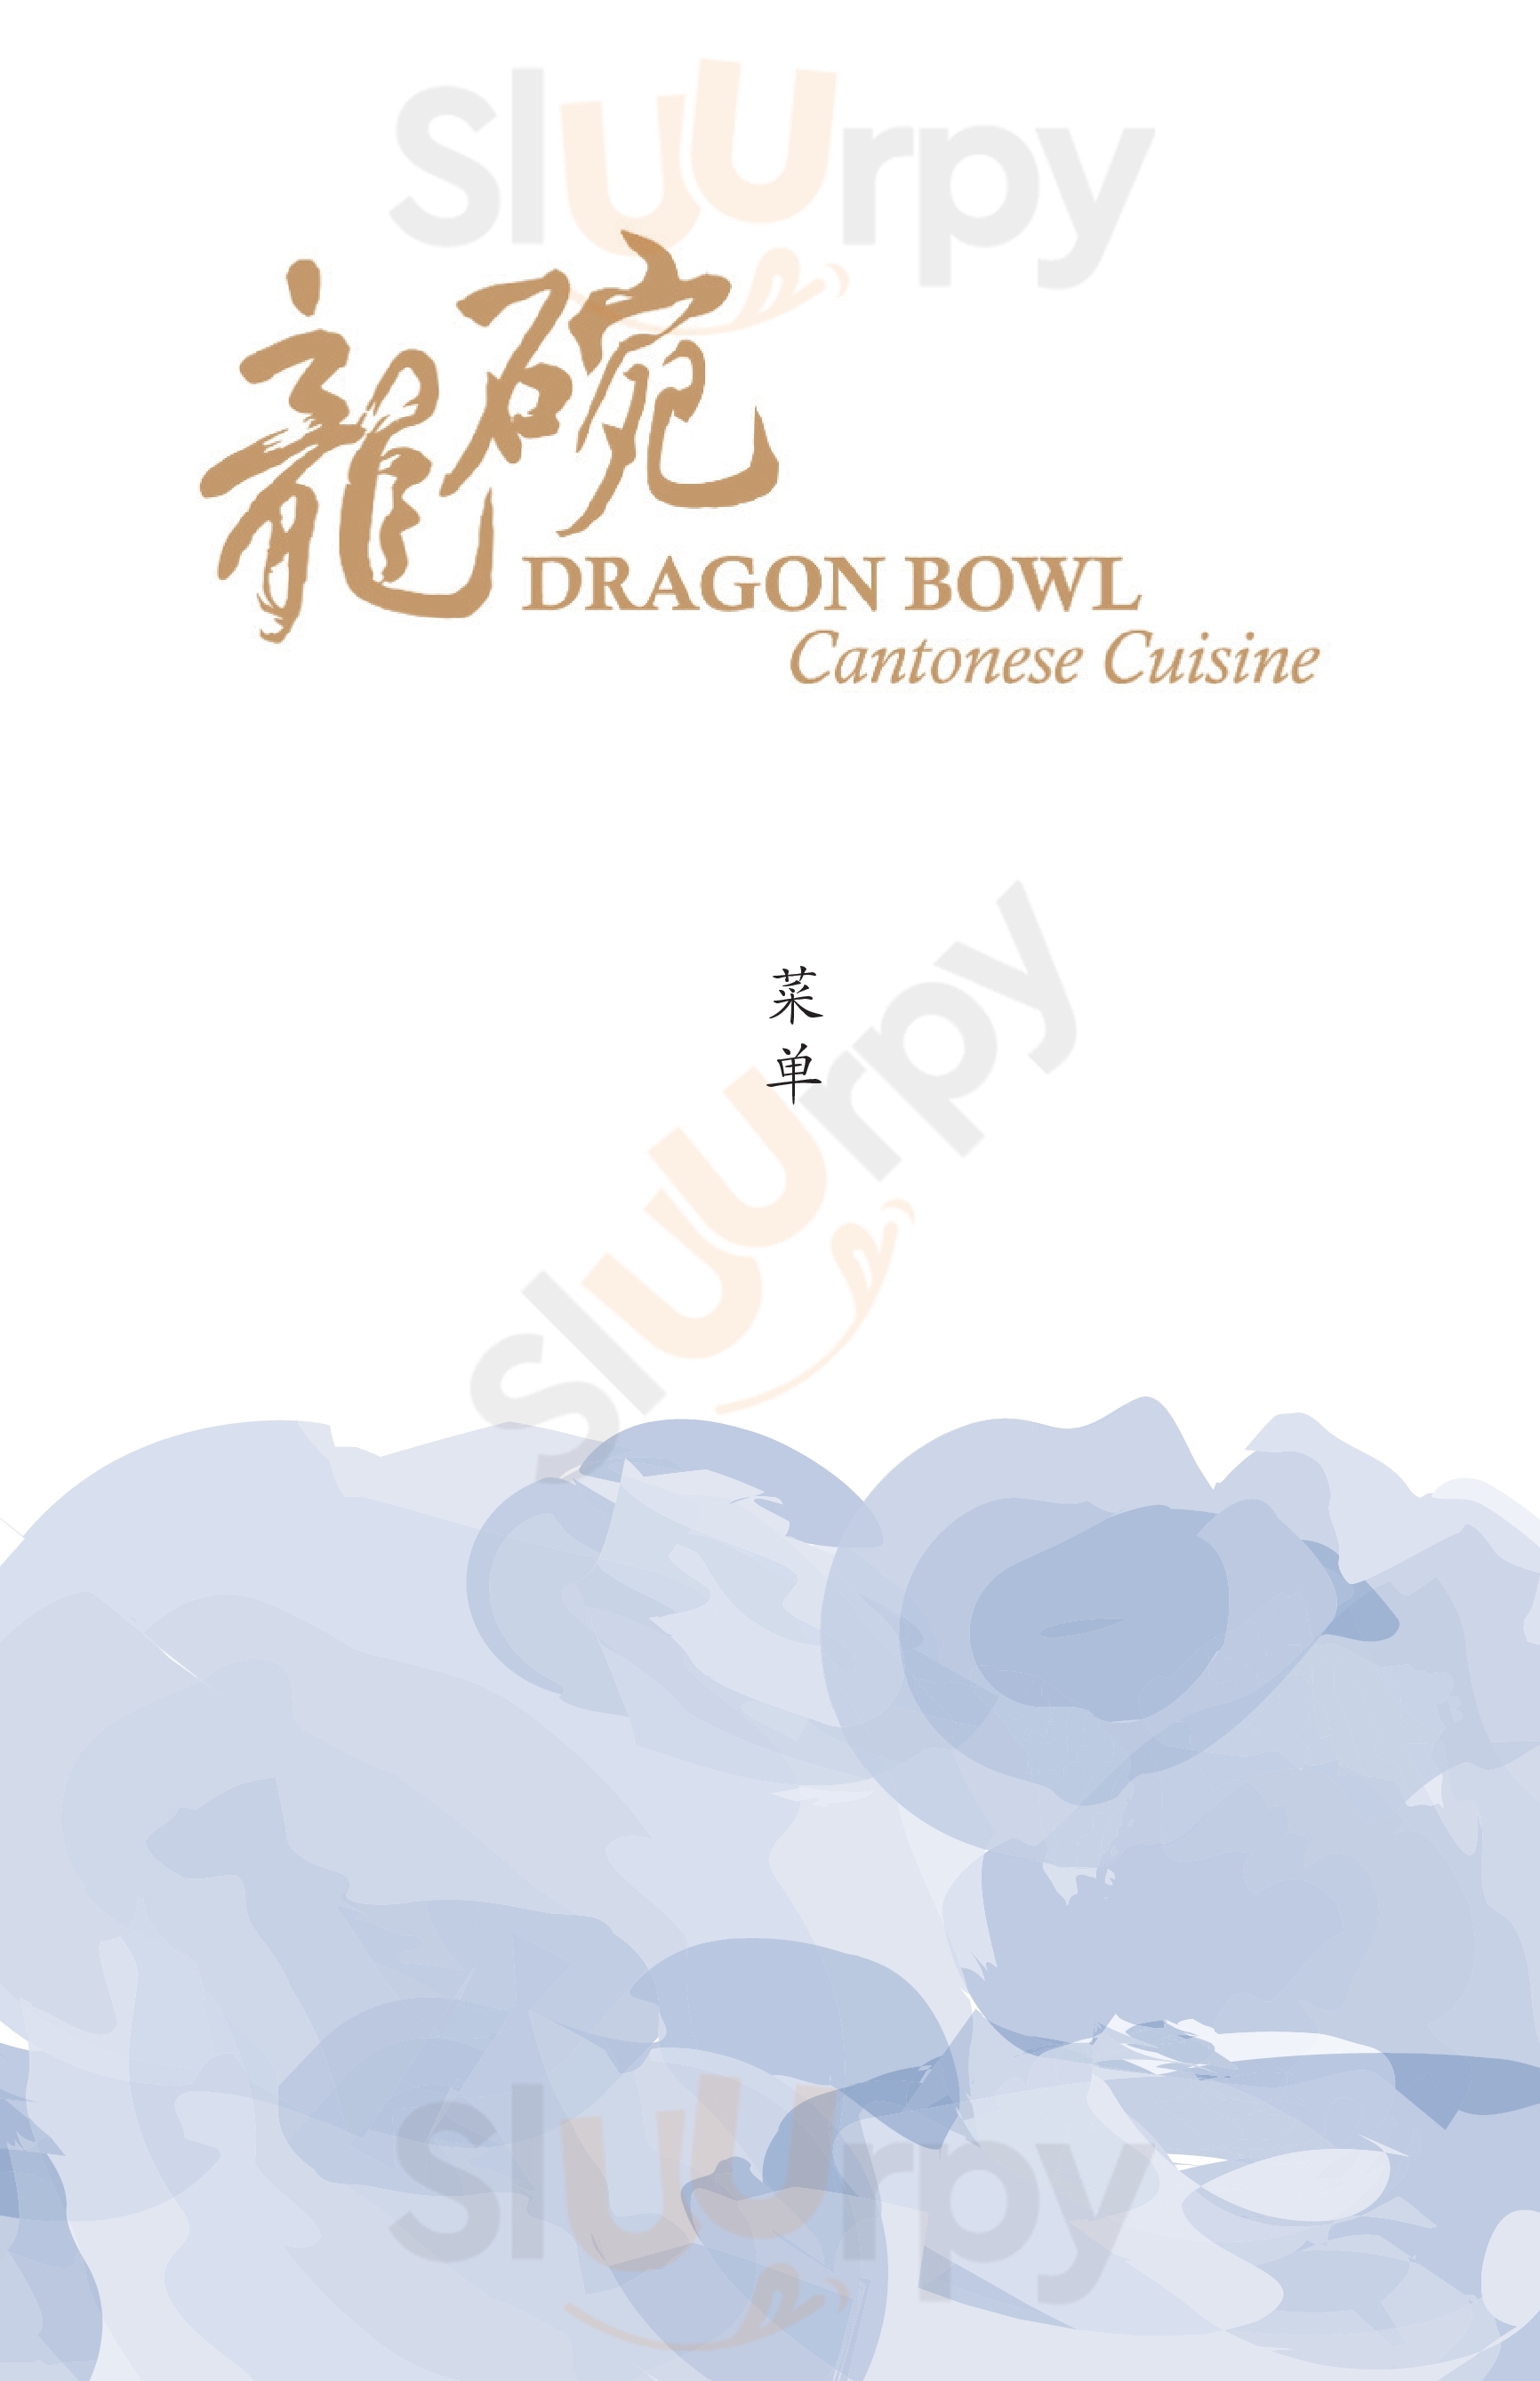 Dragon Bowl Singapore Menu - 1